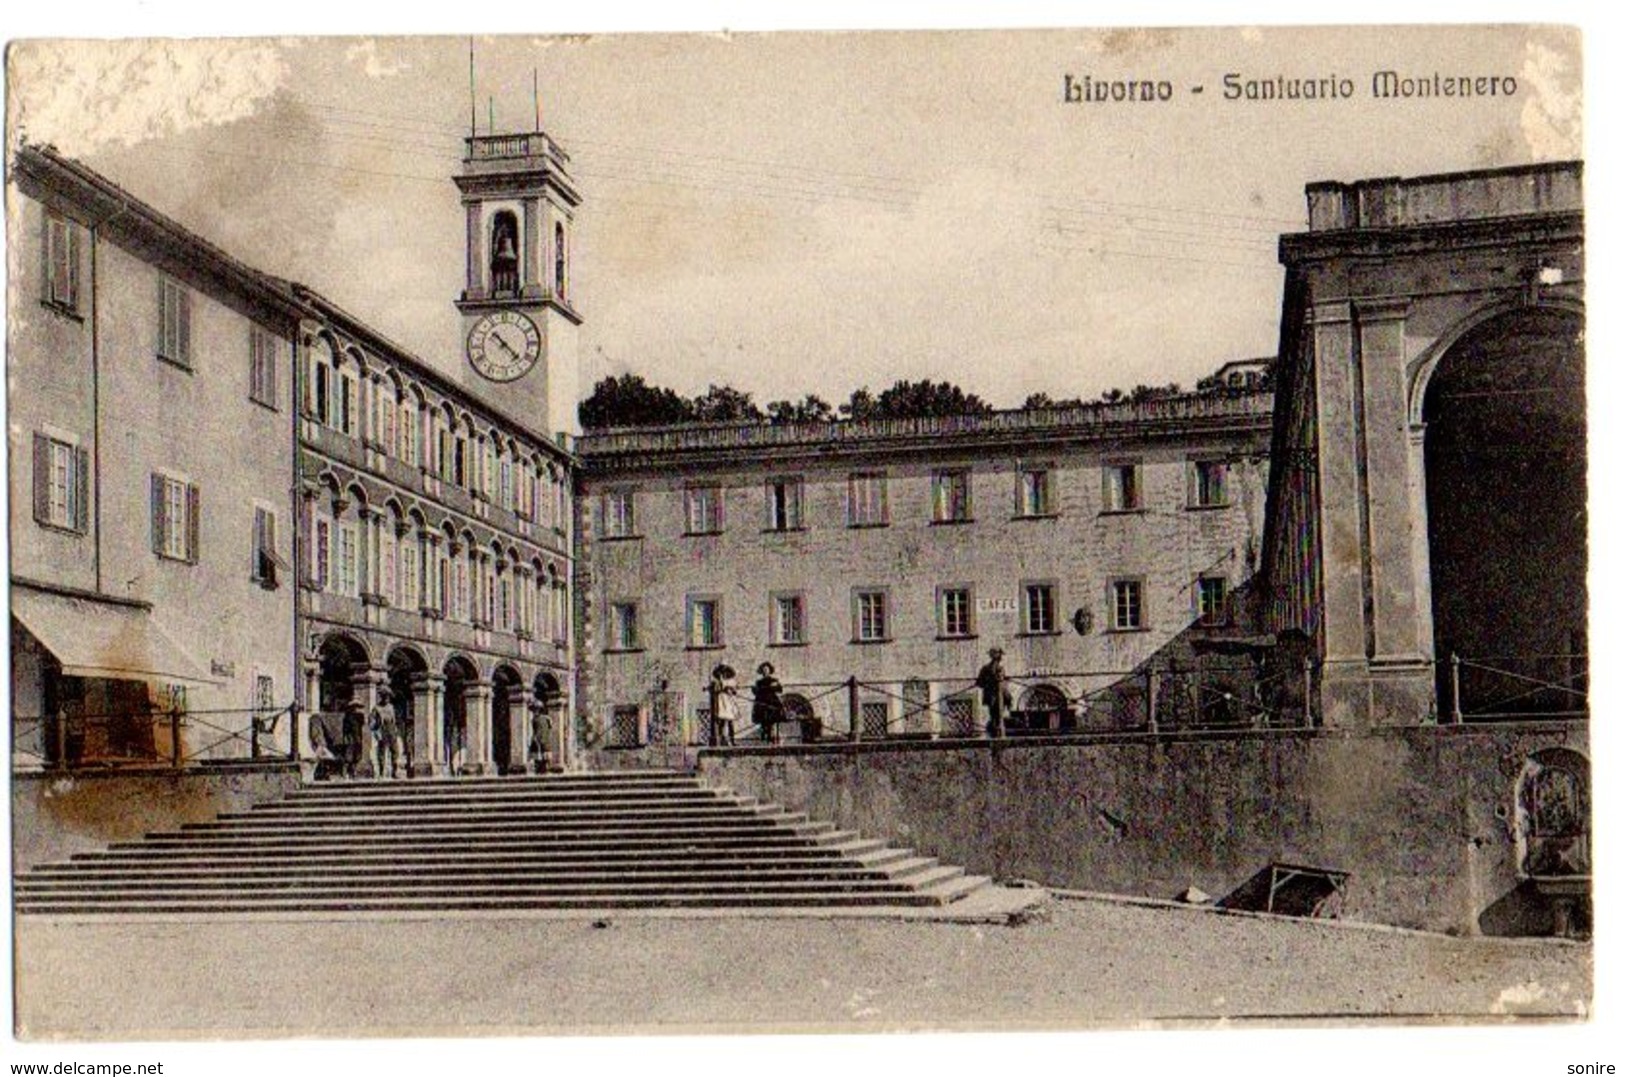 LIVORNO - SANTUARIO MONTENERO  - ANNULLO ALICE SUPERIORE - ED.COOP TABACCAI - VG 1915 FP - C403 - Livorno